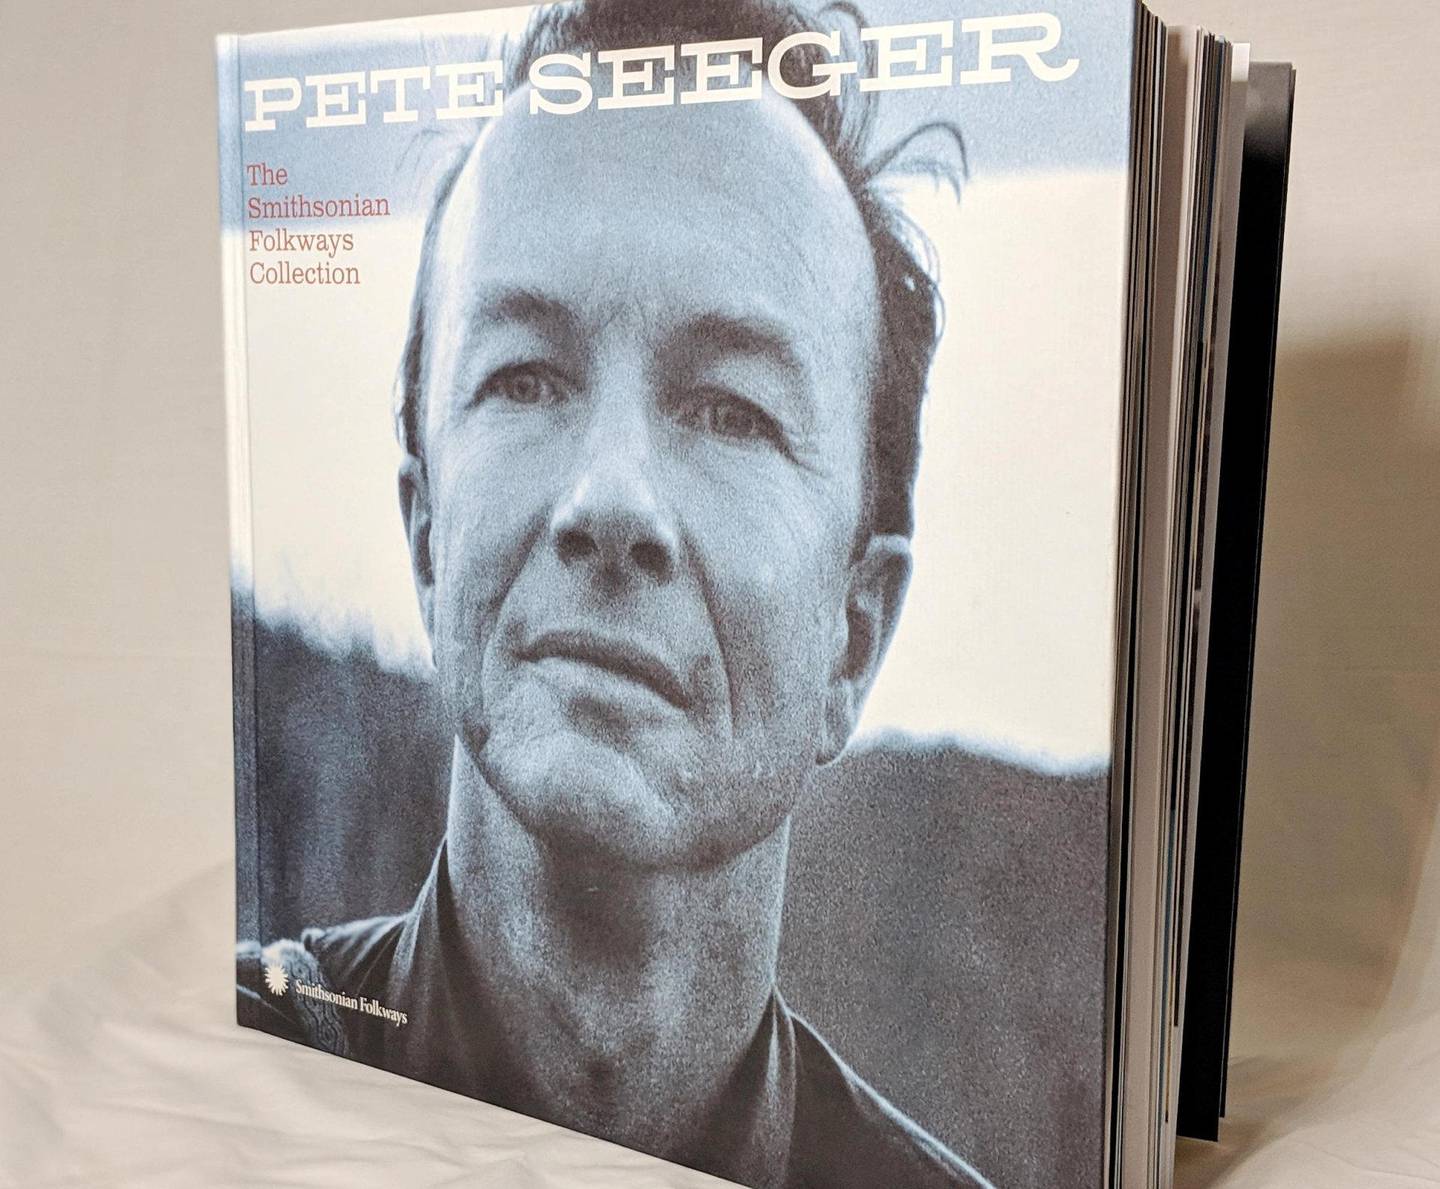 For å markere 100-årsdagen for Pete Seegers fødsel kommer nå praktutgivelsen «The Smithsonian Folkways Collection».